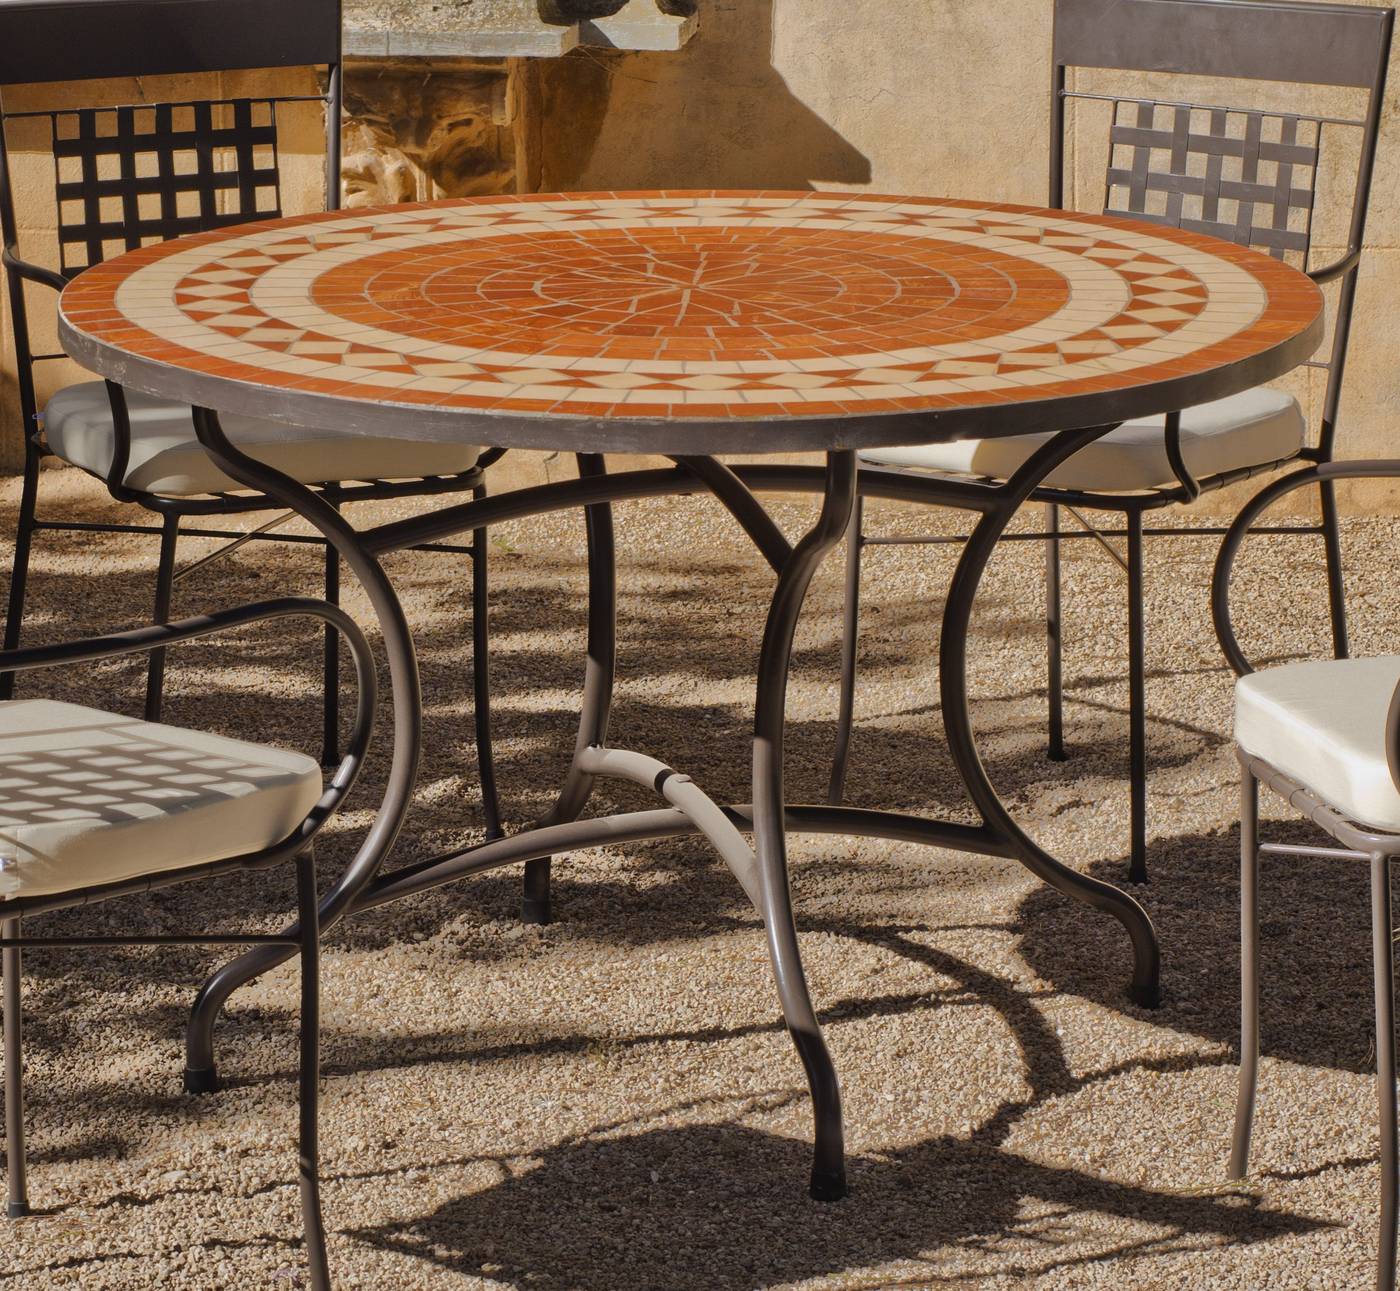 Conjunto Mosaico Lorni-Vigo 120-4 - Conjunto de forja para jardín: 1 mesa con panel mosaico + 4 sillones de forja + 4 cojines